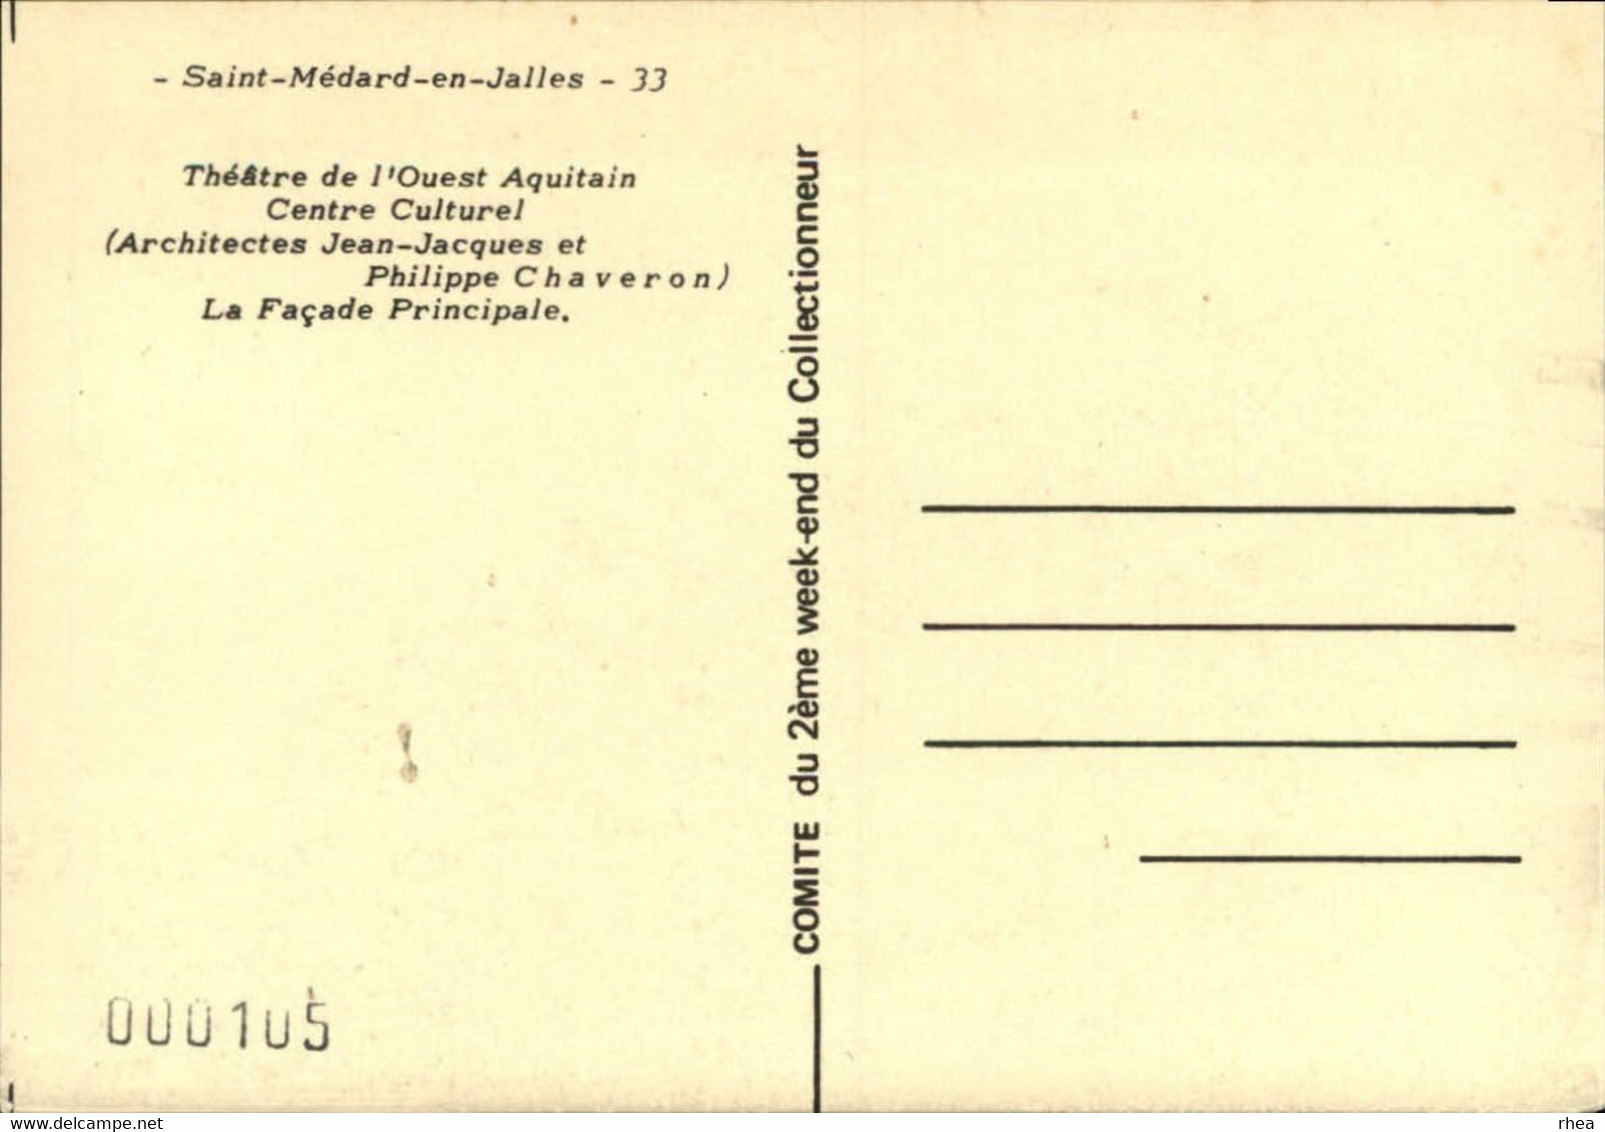 SALONS DE COLLECTIONS - 2 Cartes - Salon De Cartes Postales -  SAINT MEDARD EN JALLES - 1981 Et 1982 - Bourses & Salons De Collections